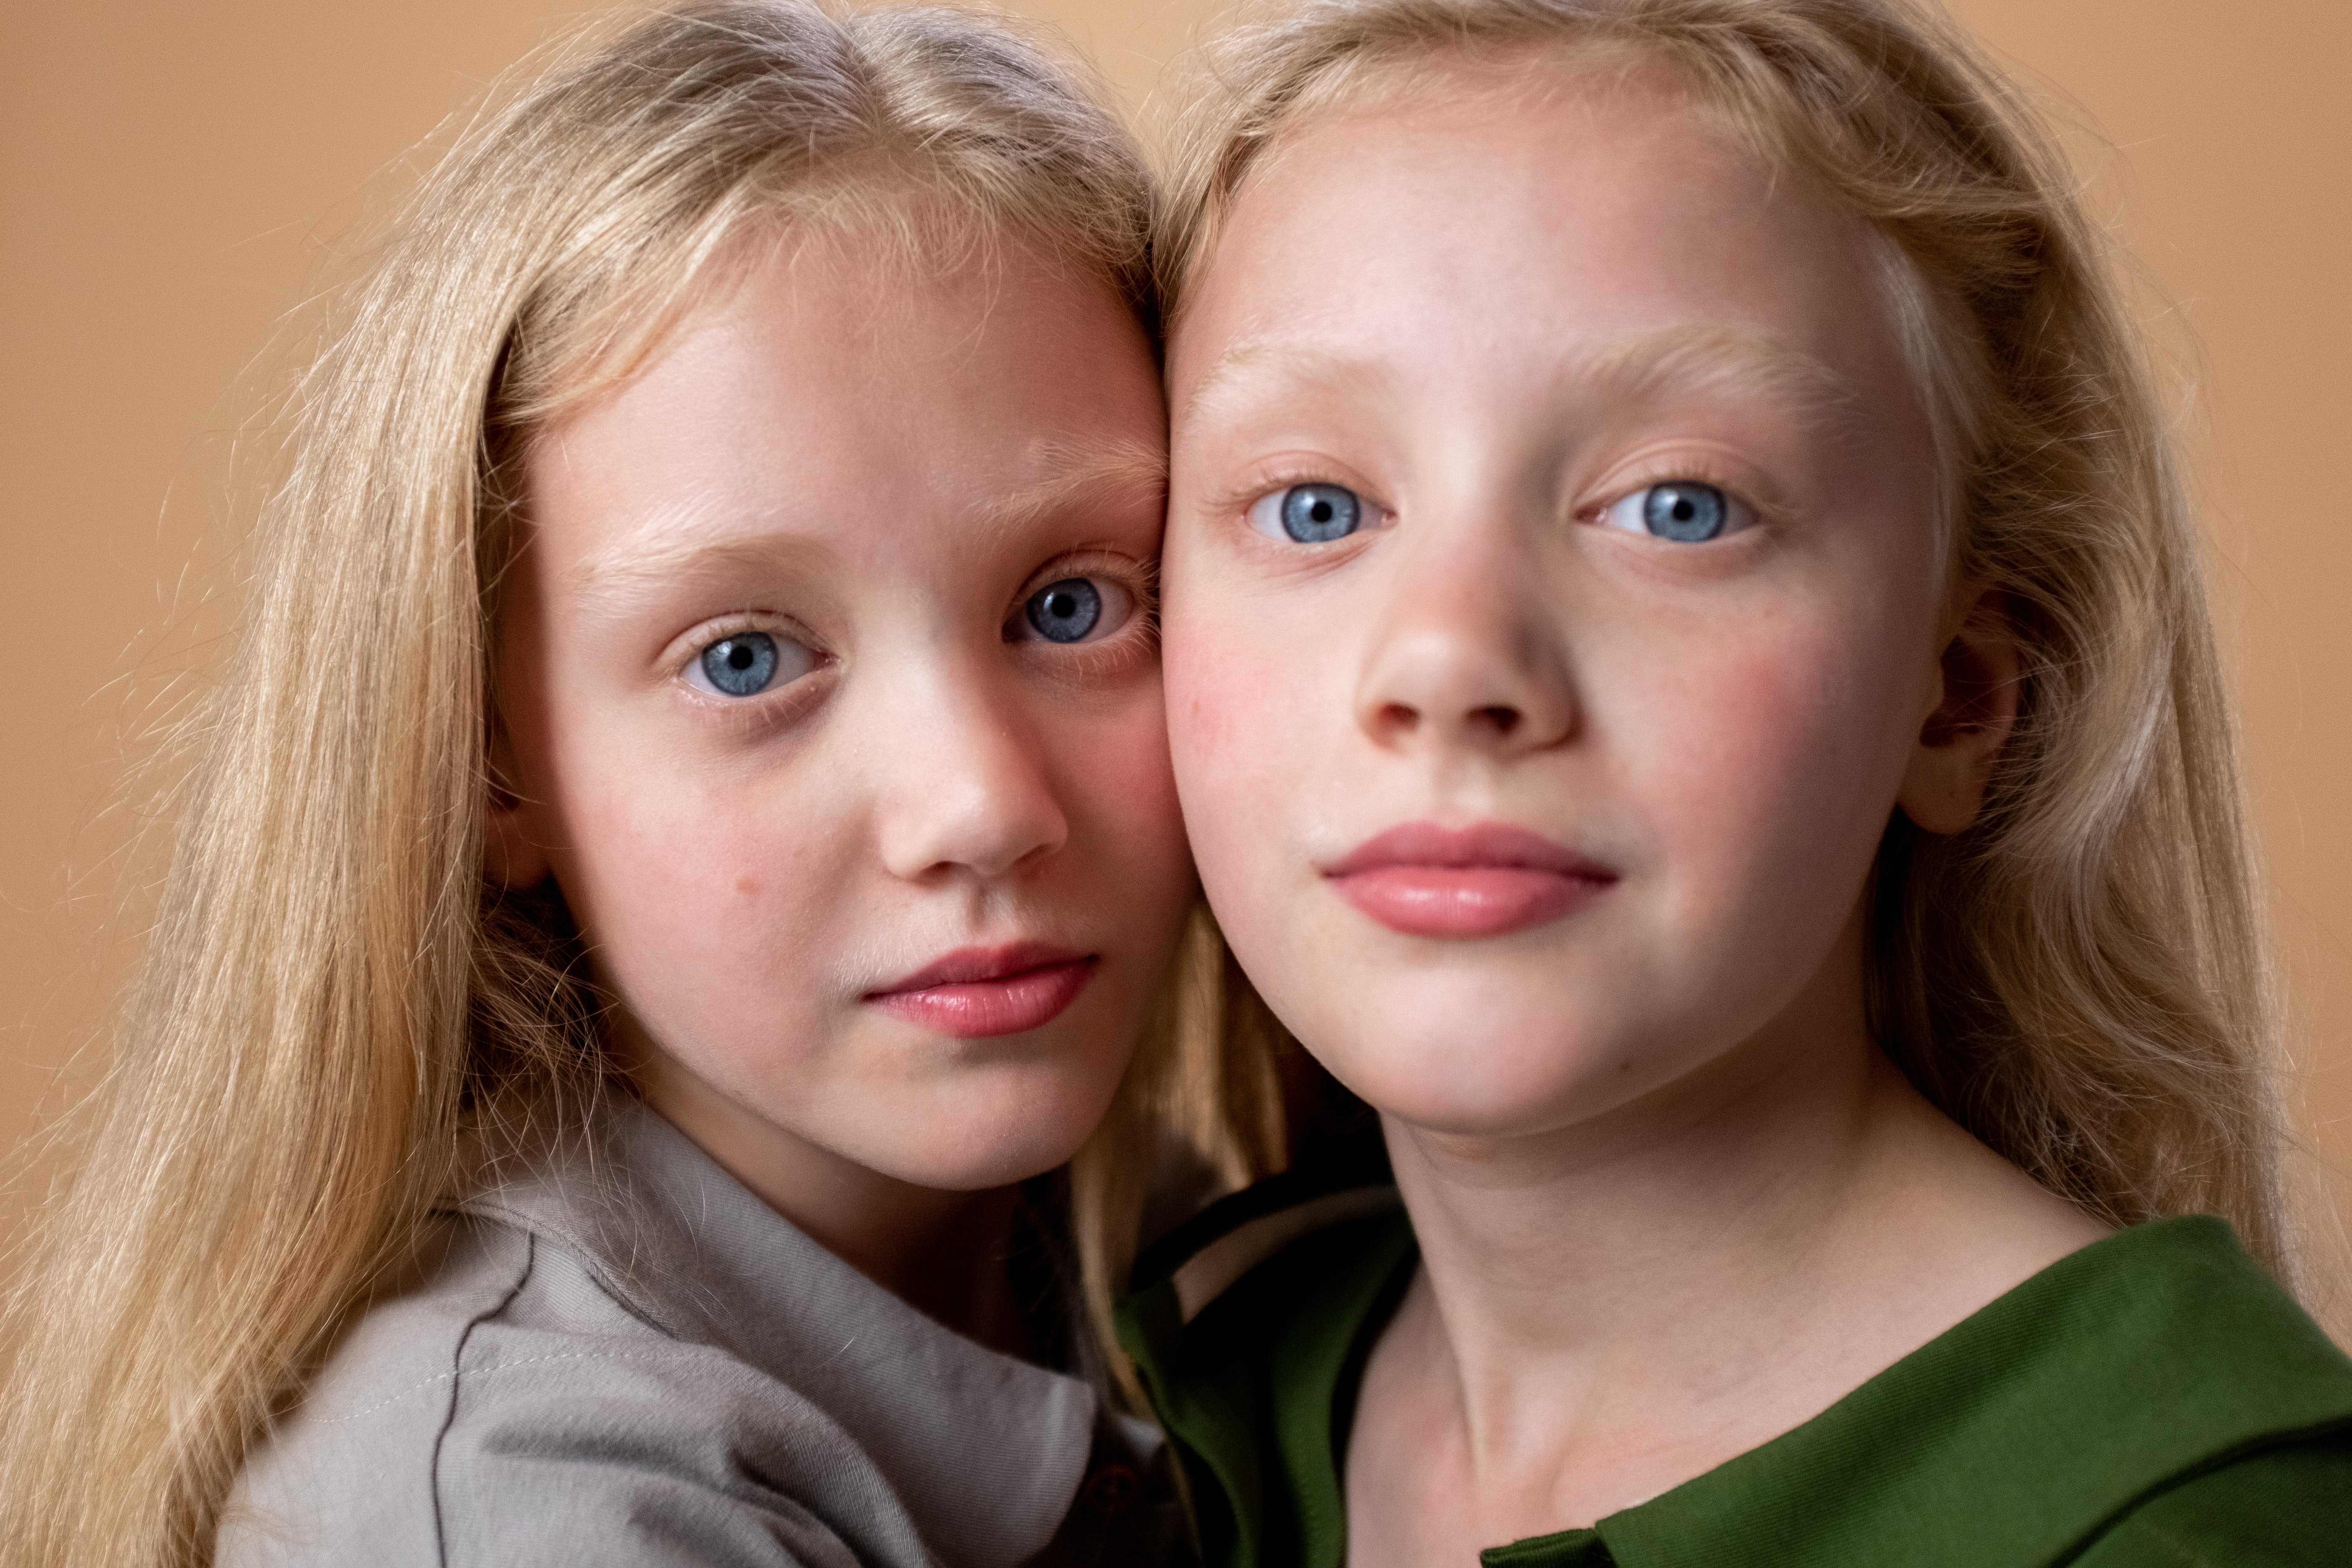 Rosie and Julie were twin sisters. | Source: Pexels